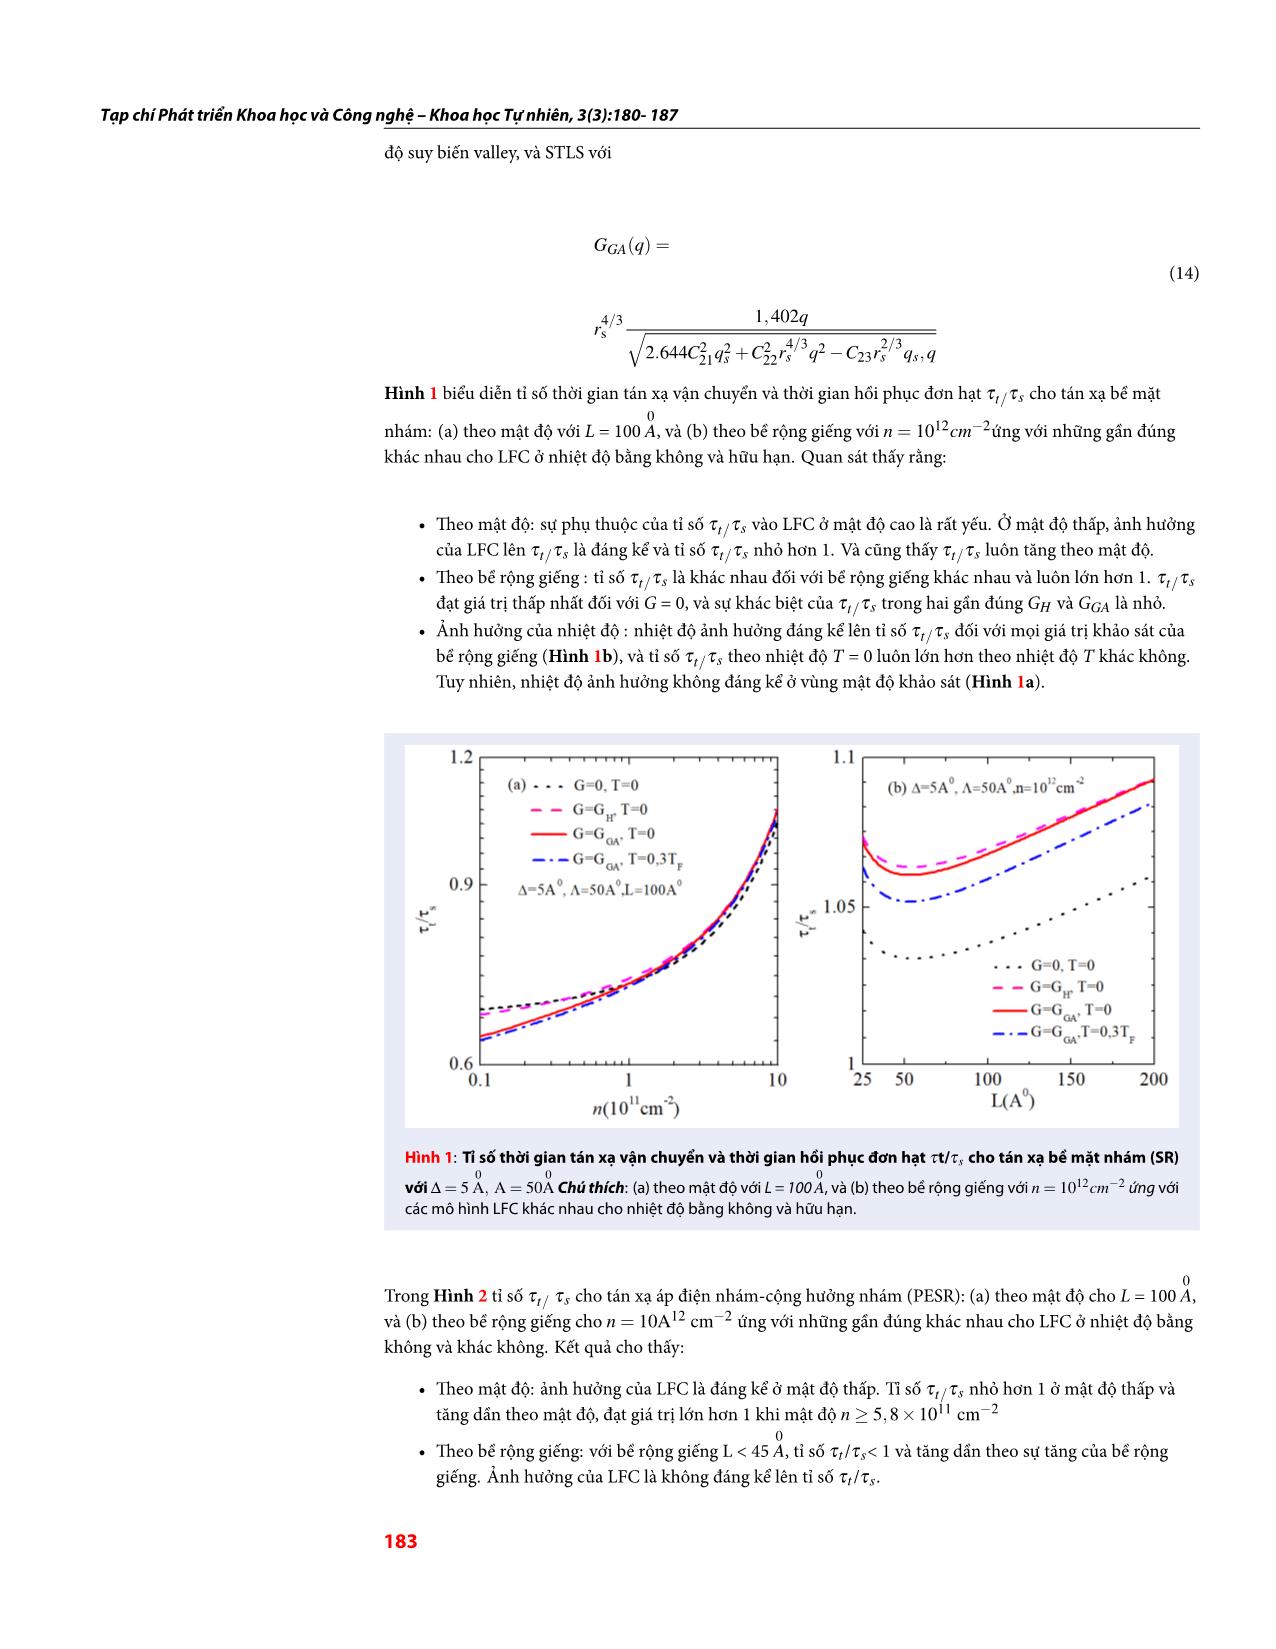 Thời gian tán xạ của điện tử trong giếng lượng tử GaAs/InGaAs/GaAs ở nhiệt độ hữu hạn có xét đến hiệu ứng tương quan trao đổi trang 4